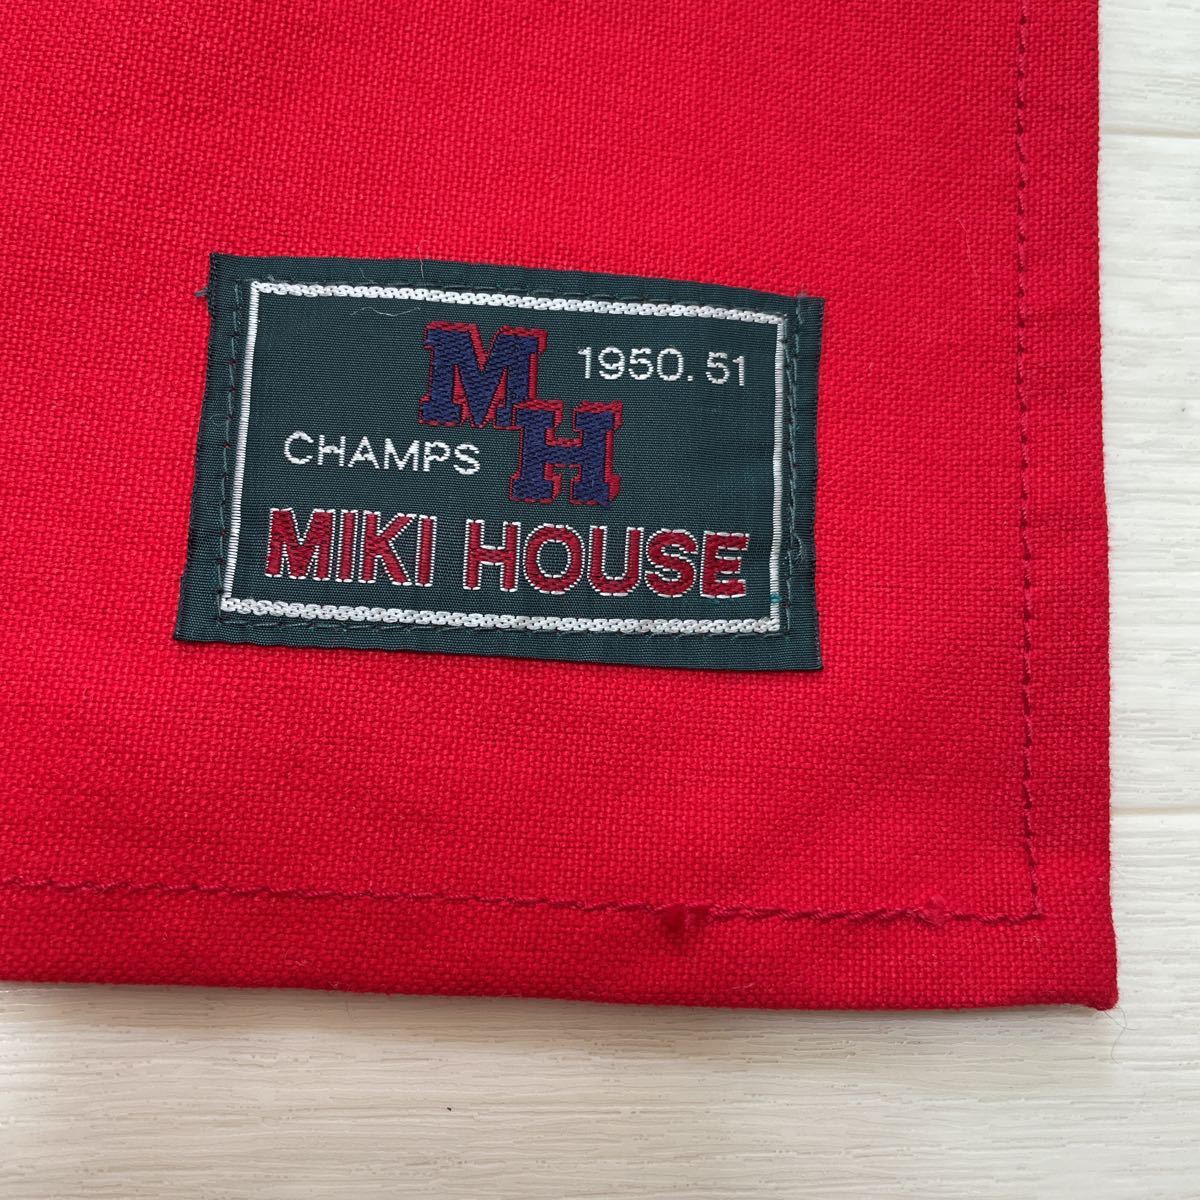  Miki House MIKI HOUSE для взрослых фартук Logo редкий редкий товар CHAMPS MH 1950.51 сделано в Японии красный цвет не использовался 